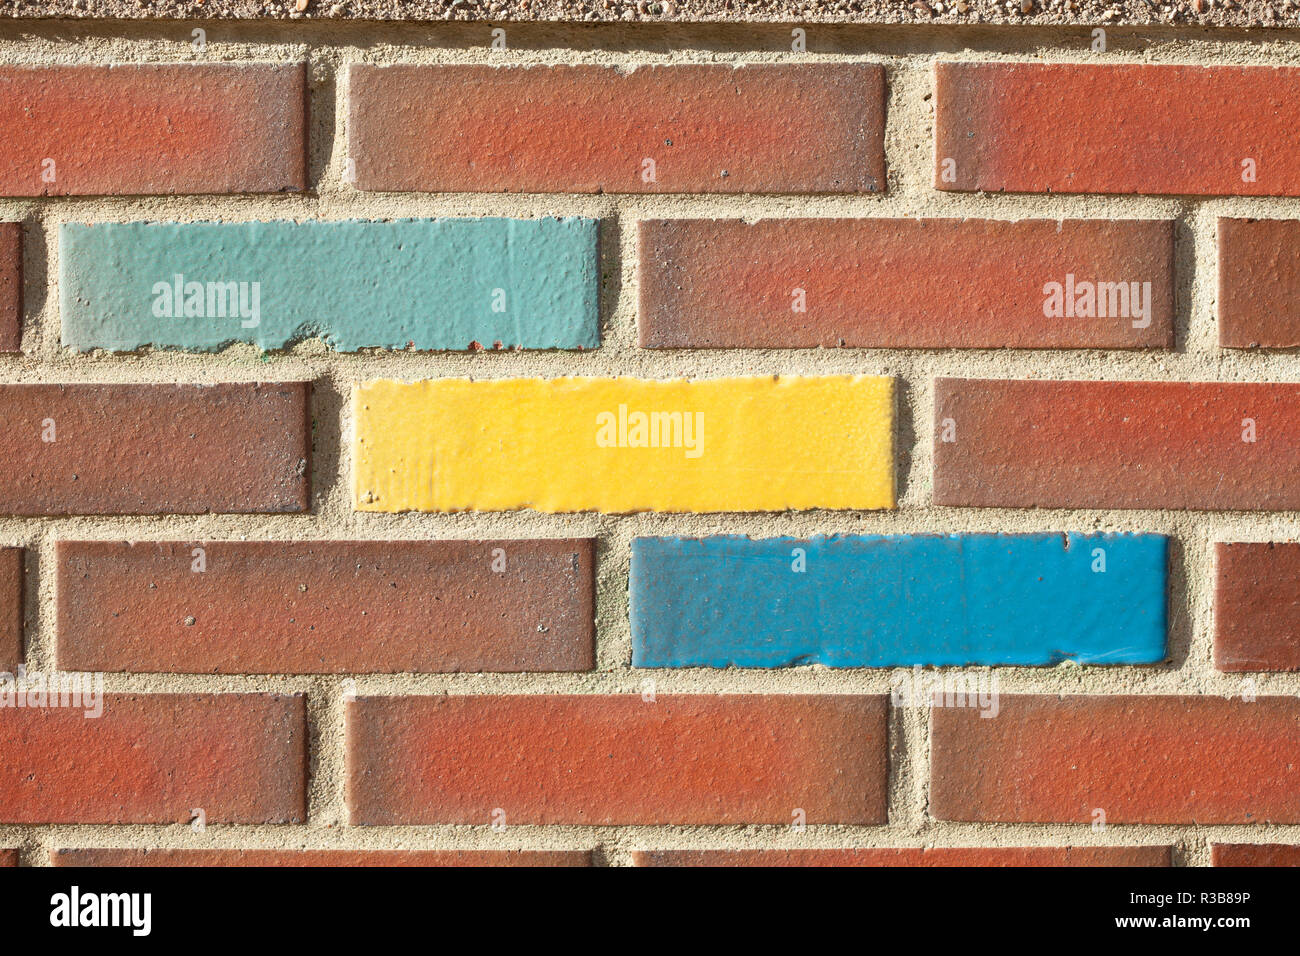 Coloured bricks in brick wall, Germany Stock Photo